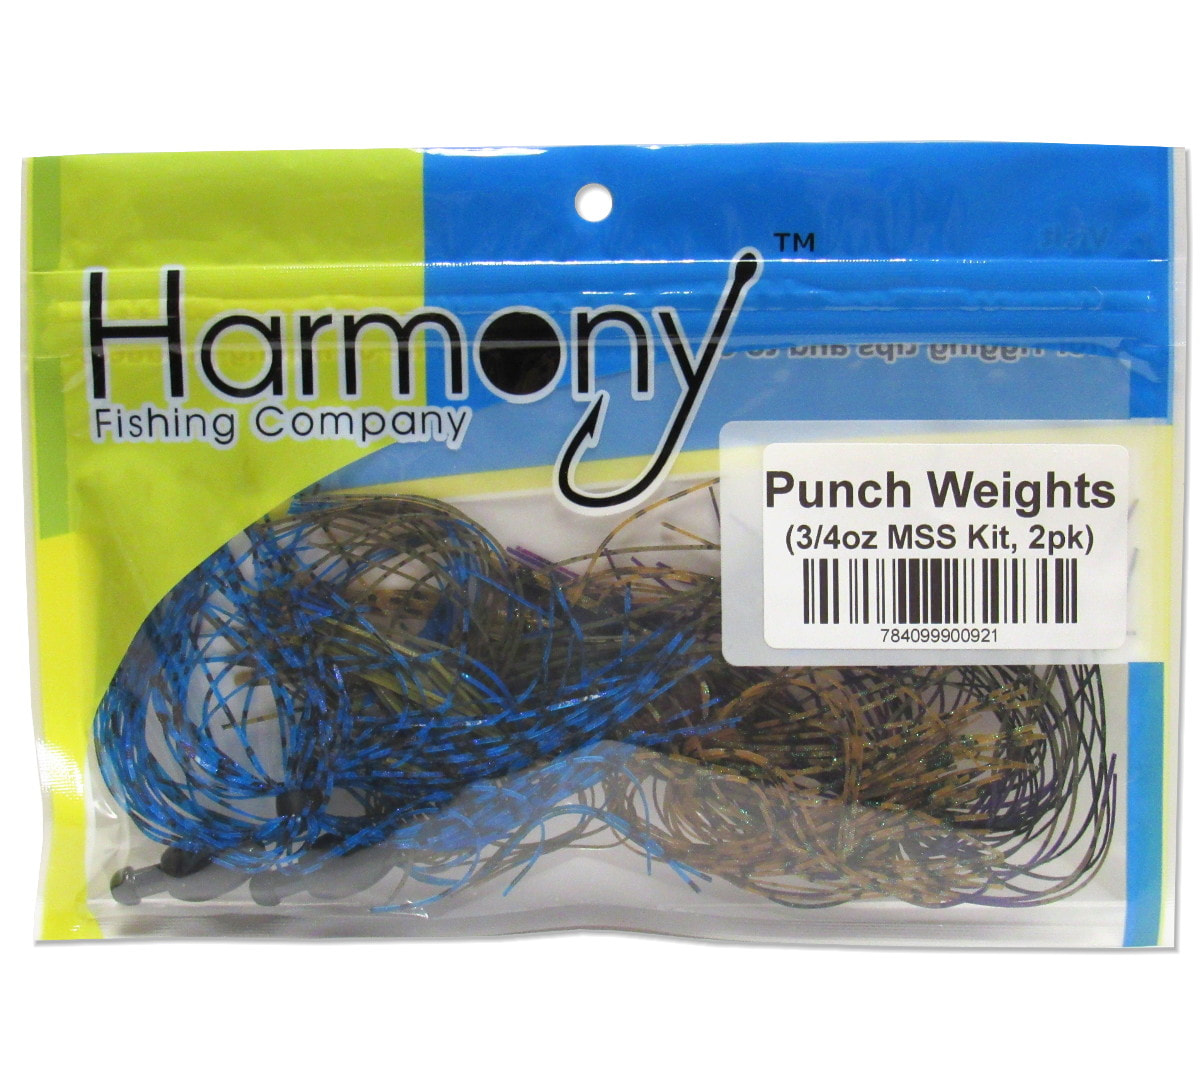 Punch Shot Kit - Harmony Fishing Company